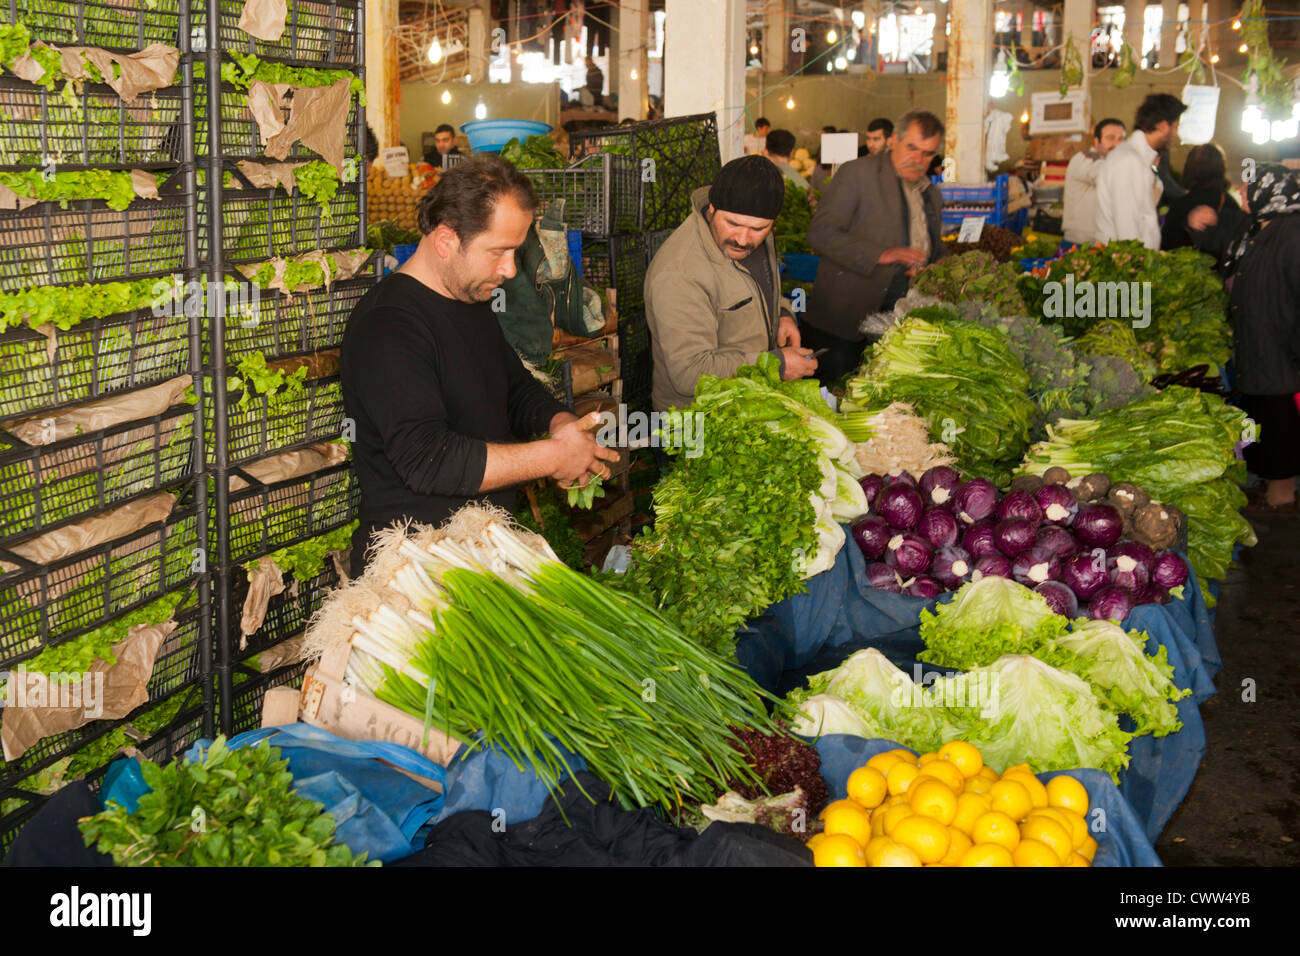 Türkei, Istanbul, Besiktas, Samstagsmarkt Abteilung Obst und Gemüse Foto Stock